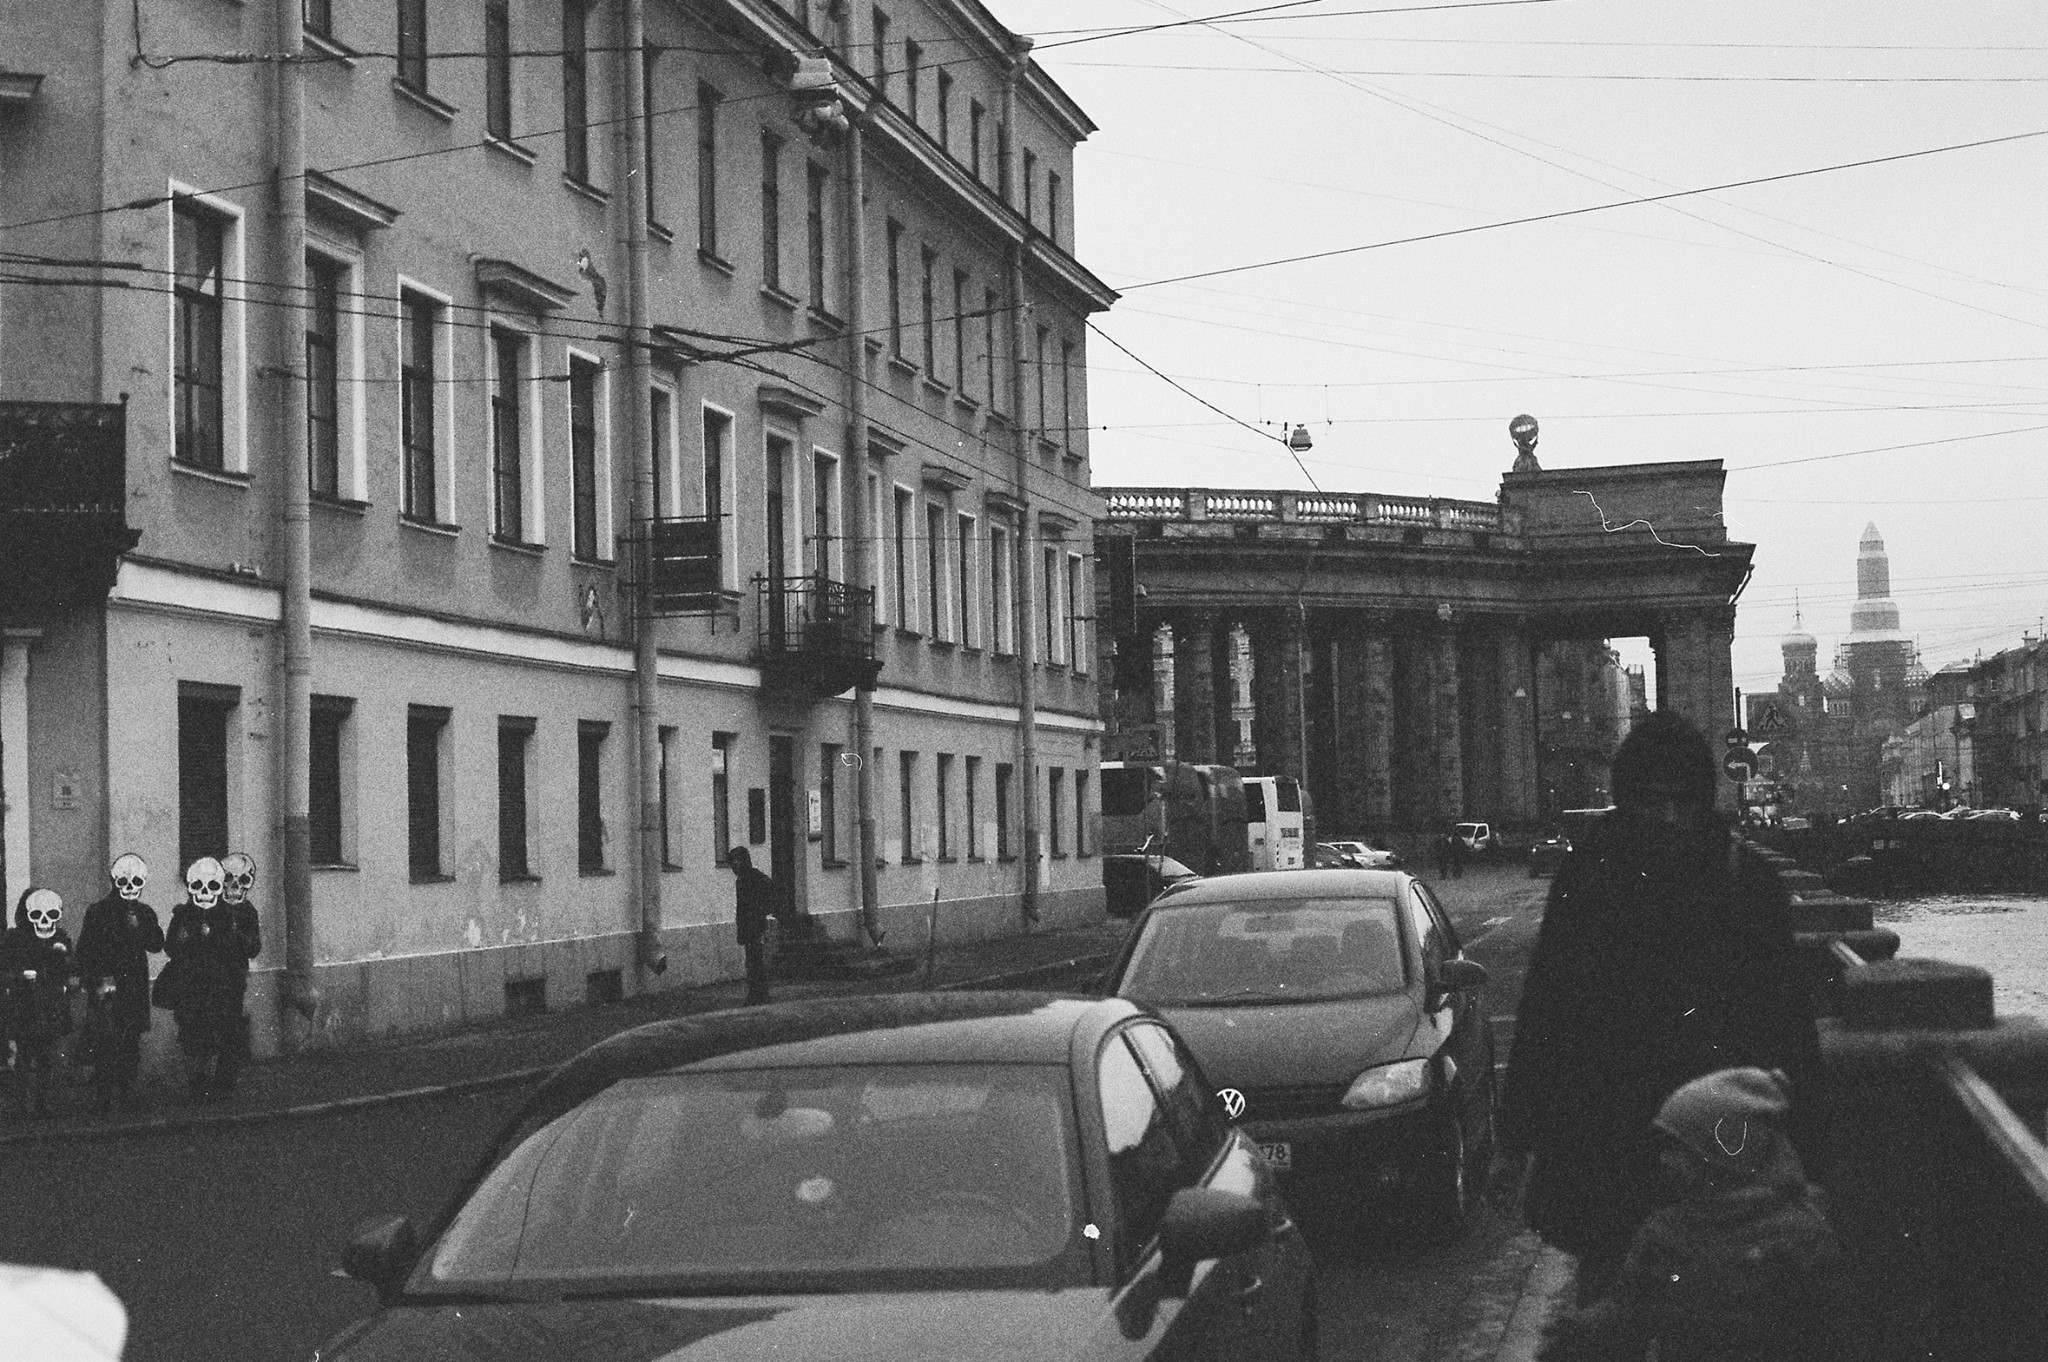 экскурсия по местам боевой славы петербургского арт-активизма, 12.17.2017, фото: Эви Пярн